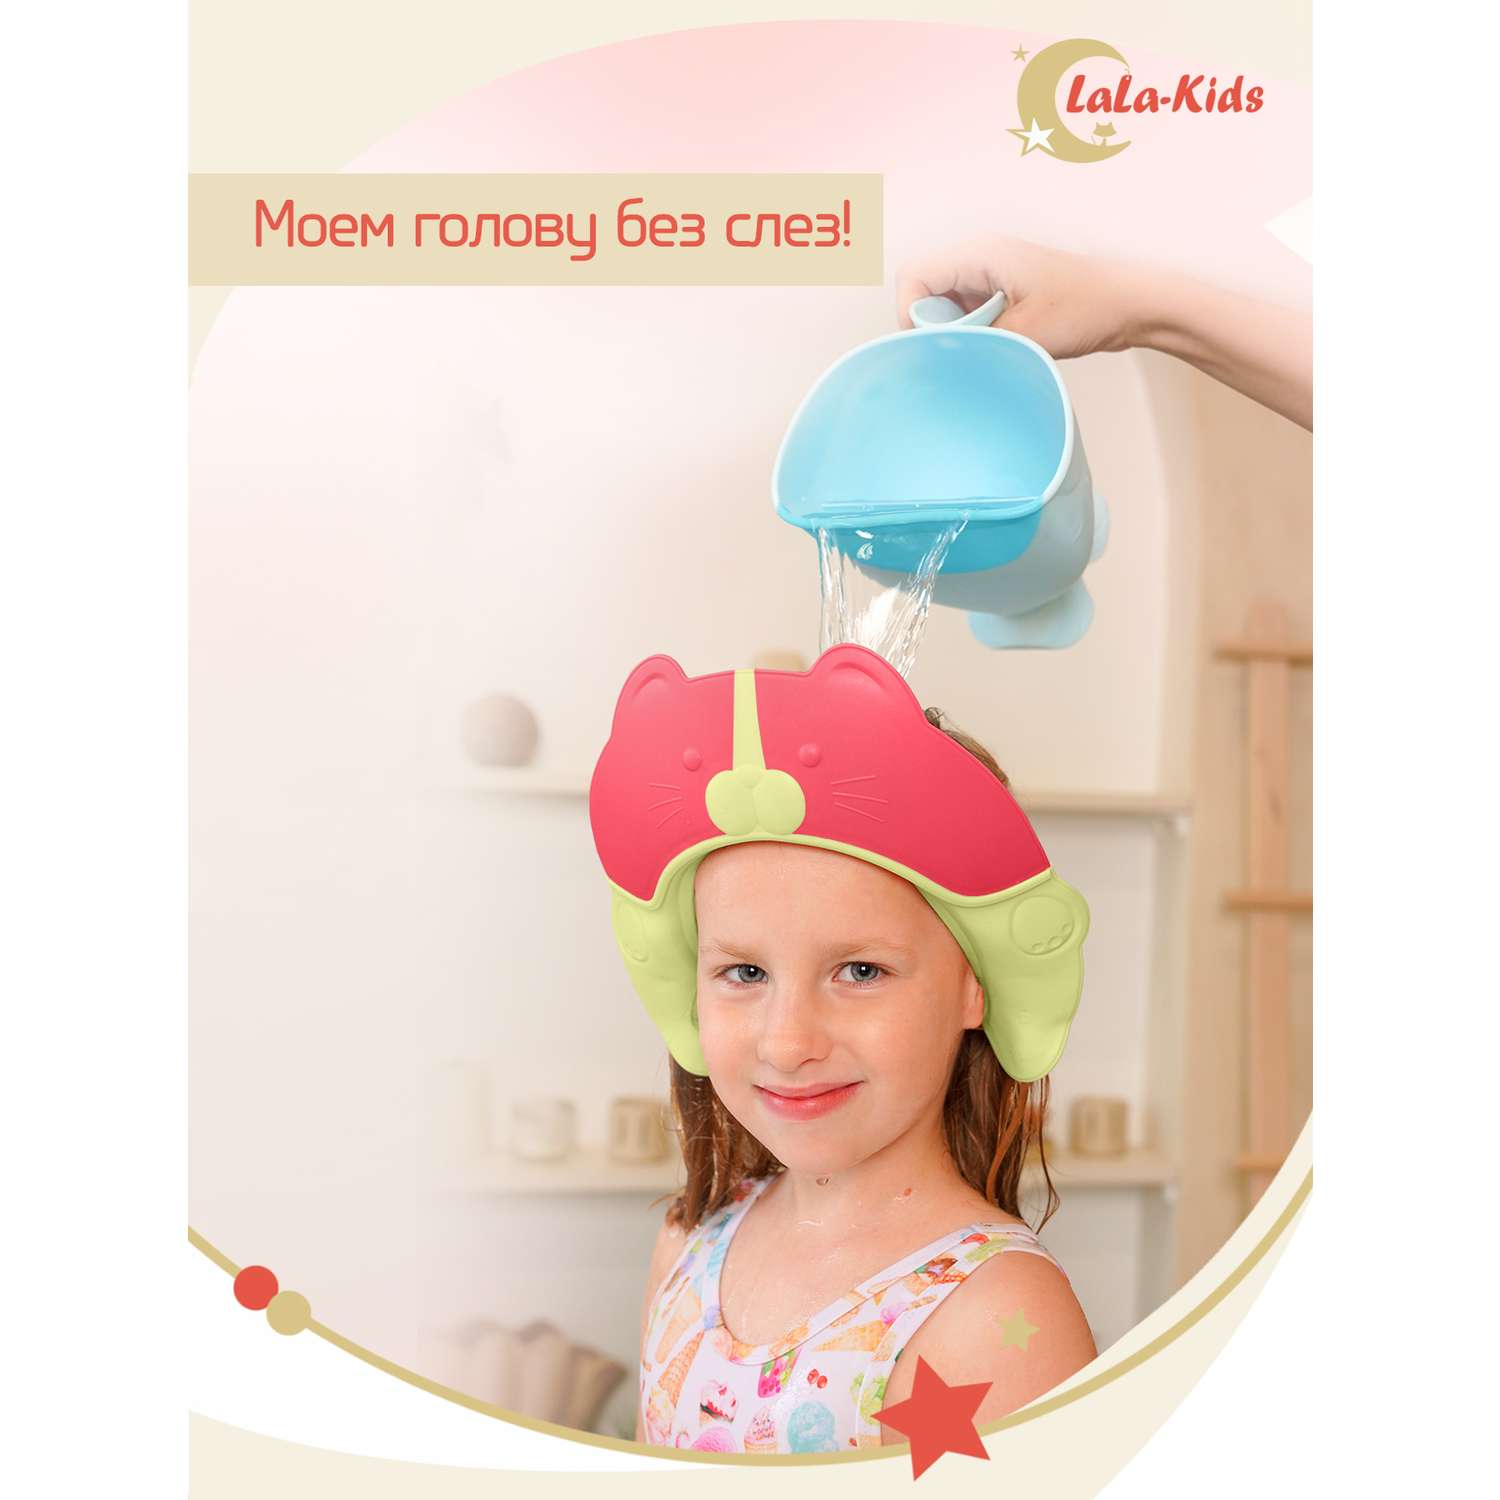 Козырек LaLa-Kids для мытья головы Котик с регулируемым размером - фото 2